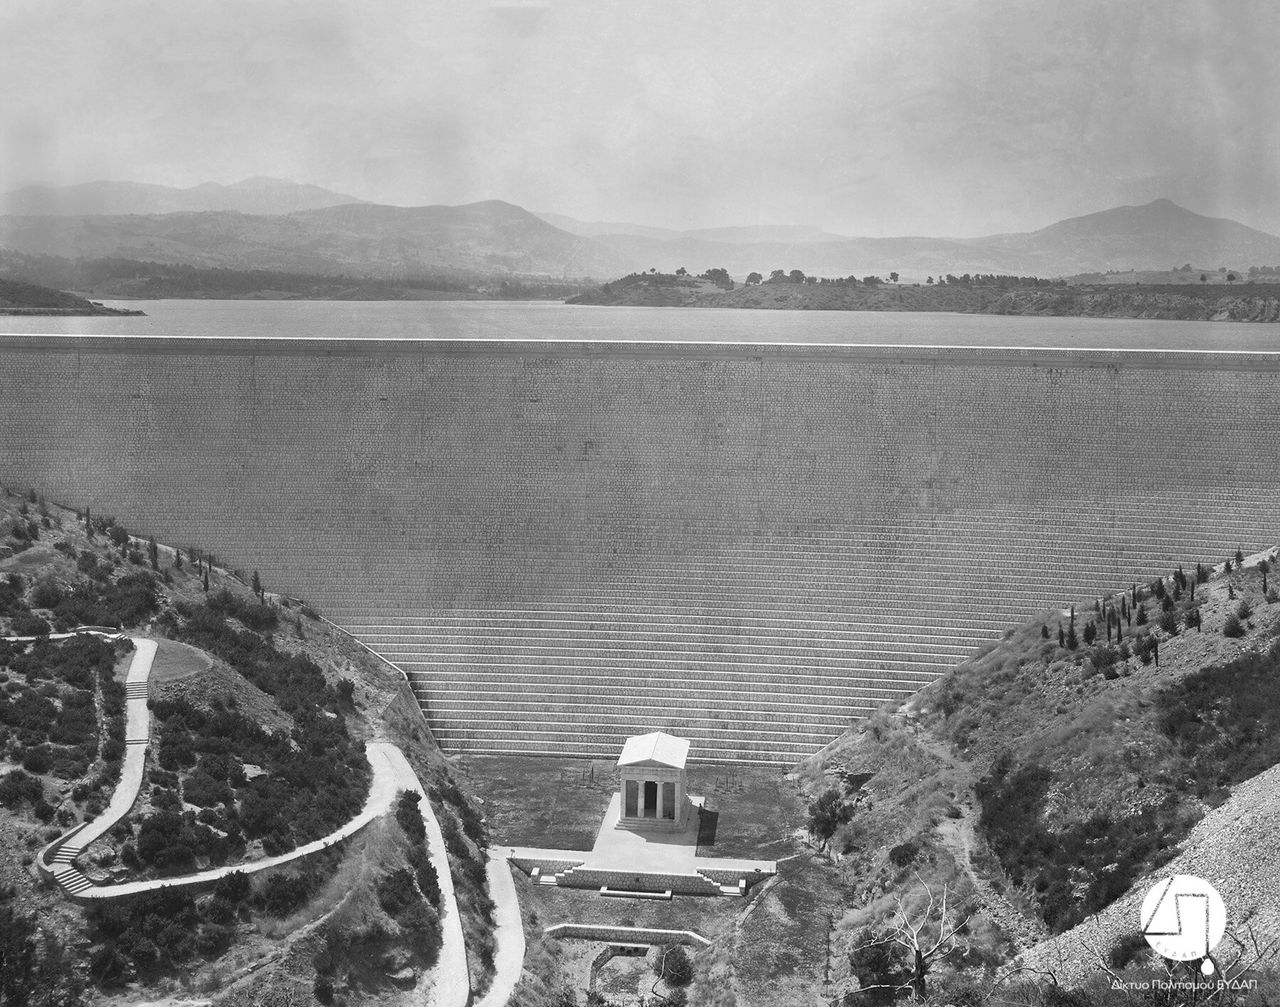 Άποψη του Φράγματος και του κτίσματος, αντιγράφου του Θησαυρού των Αθηναίων, περίπου 1931